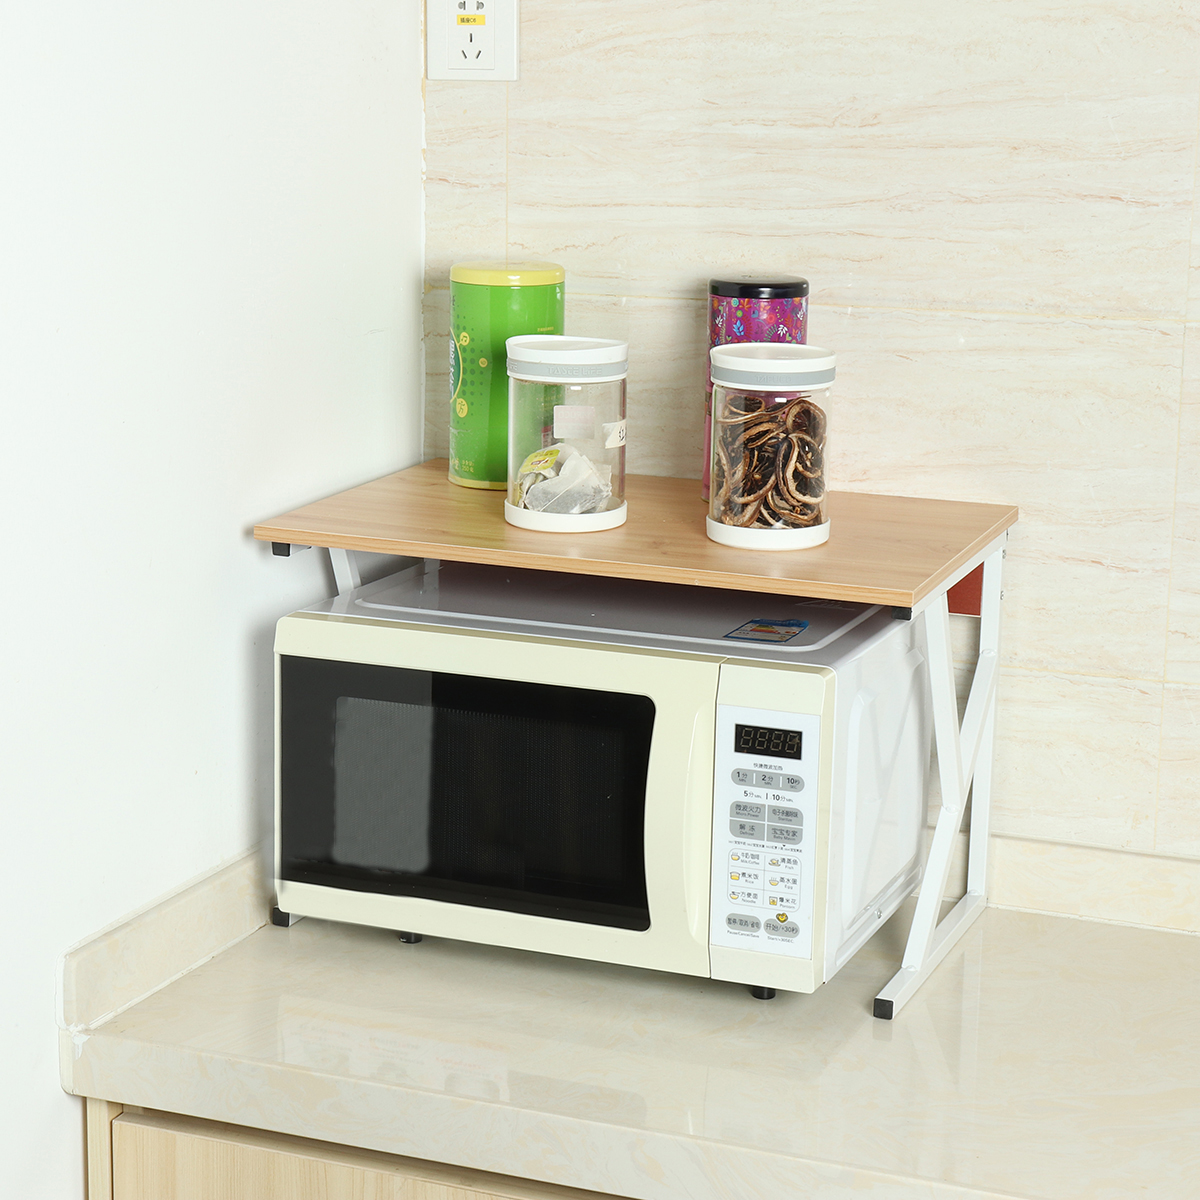 Microwave Oven Rack Kitchen Baker Stand Storage Shelf Kitchen Desktop Space Saving Organizer 12